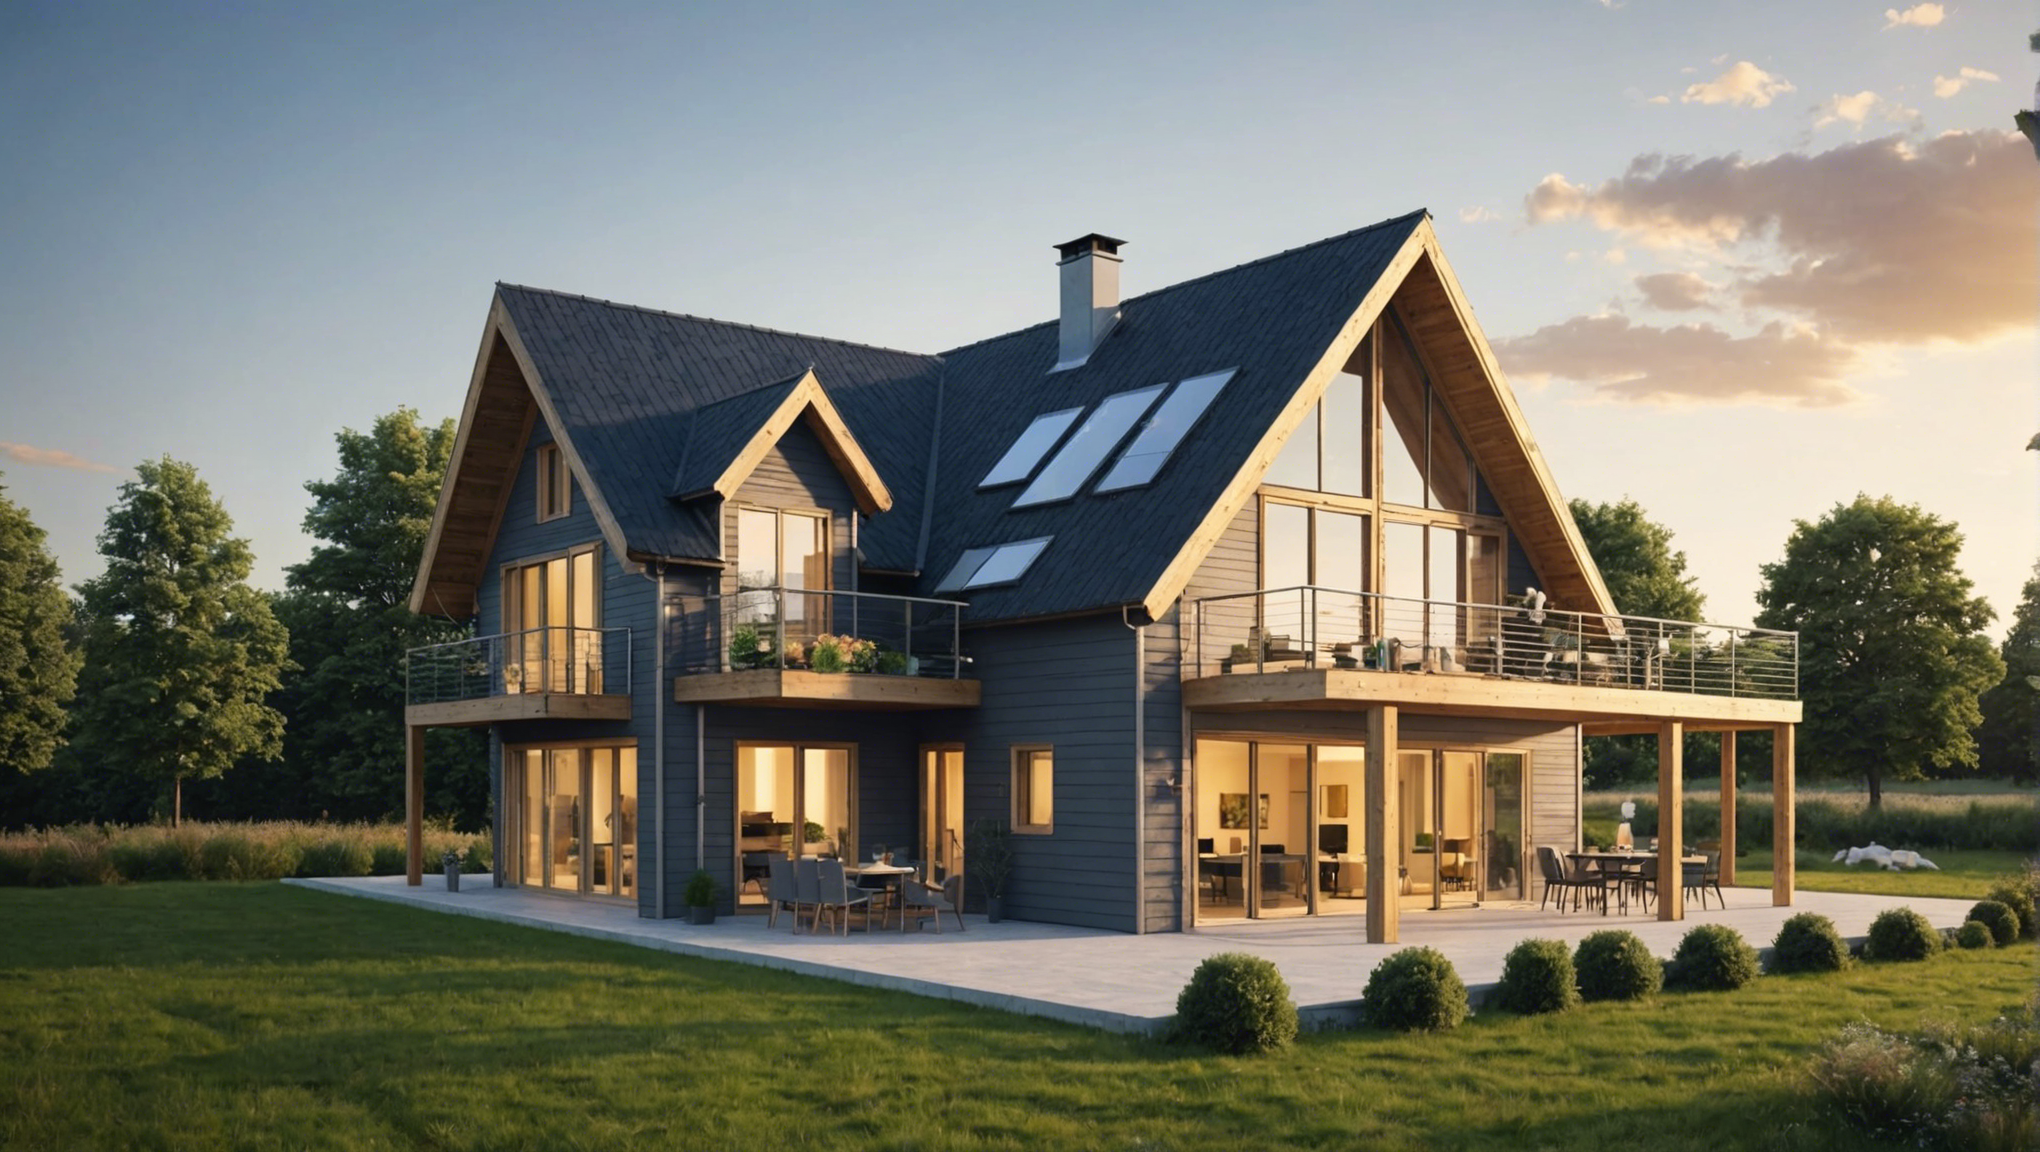 découvrez comment construire une maison respectueuse de l'environnement en suivant nos conseils pour l'éco-construction. construire une maison écologique, c'est possible !